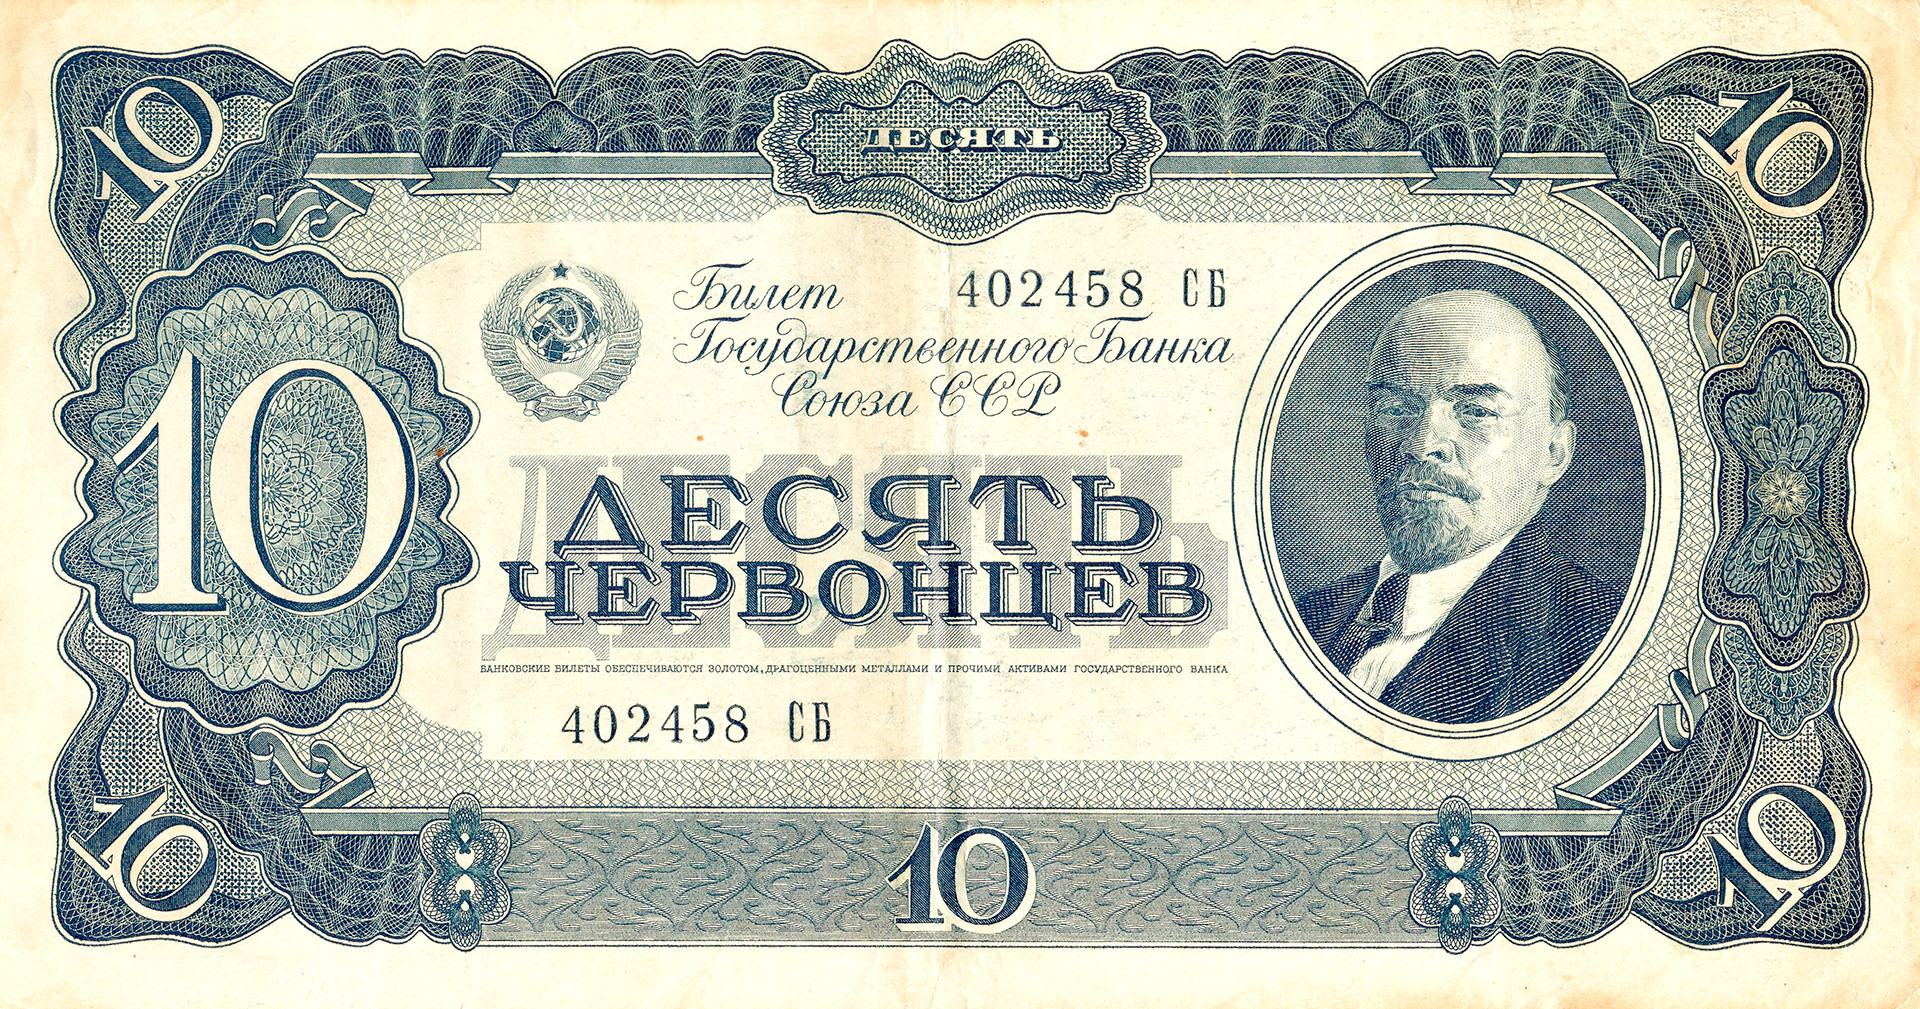 俄罗斯卢布纸币介绍（1997年—今） - 知乎